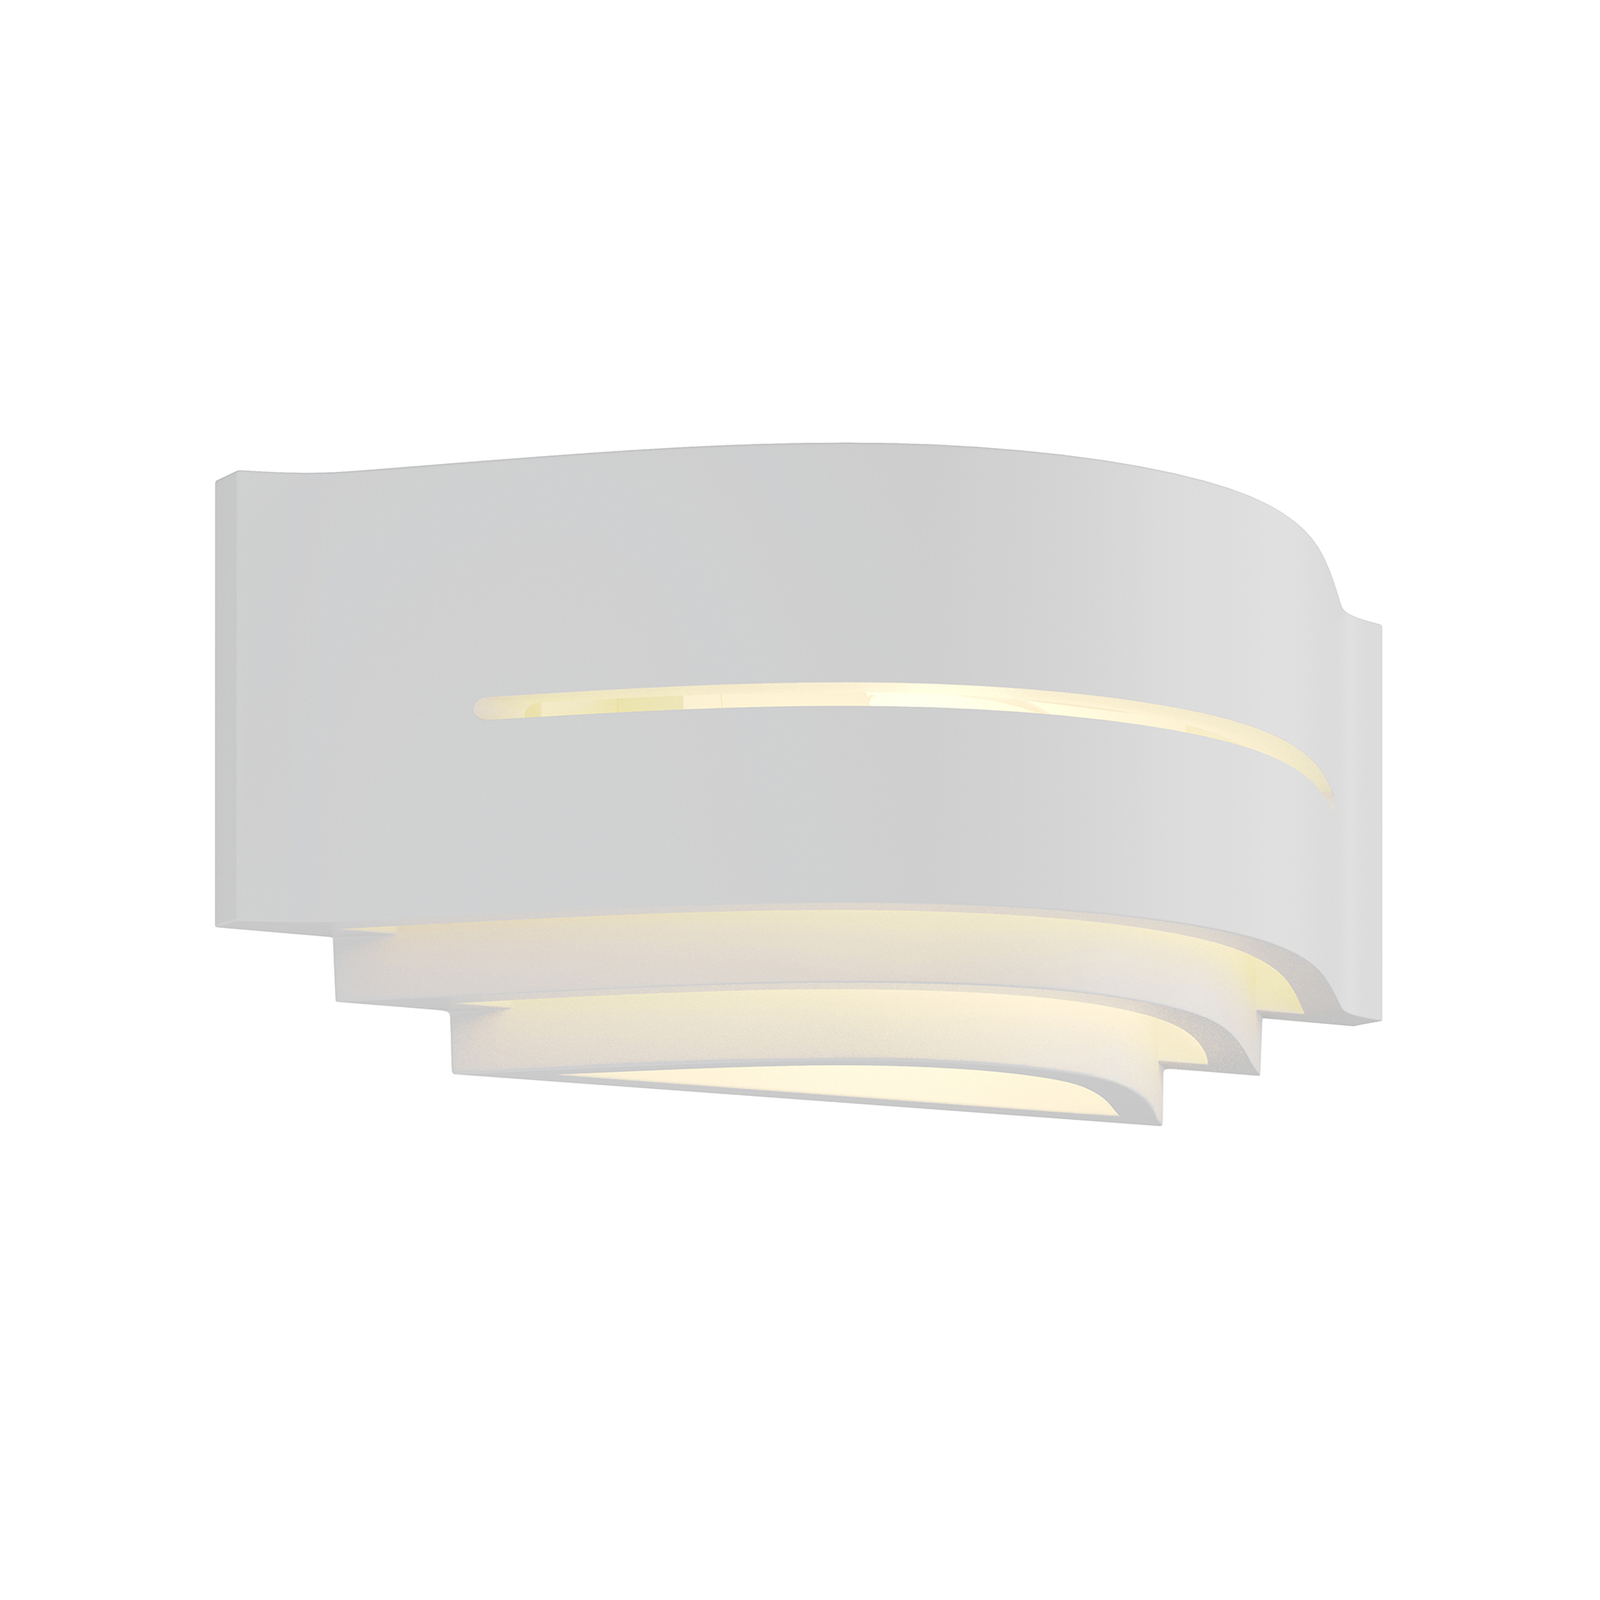 Gips-Wandlampe Amran, weiß, 3 Stufen, mit Streifen